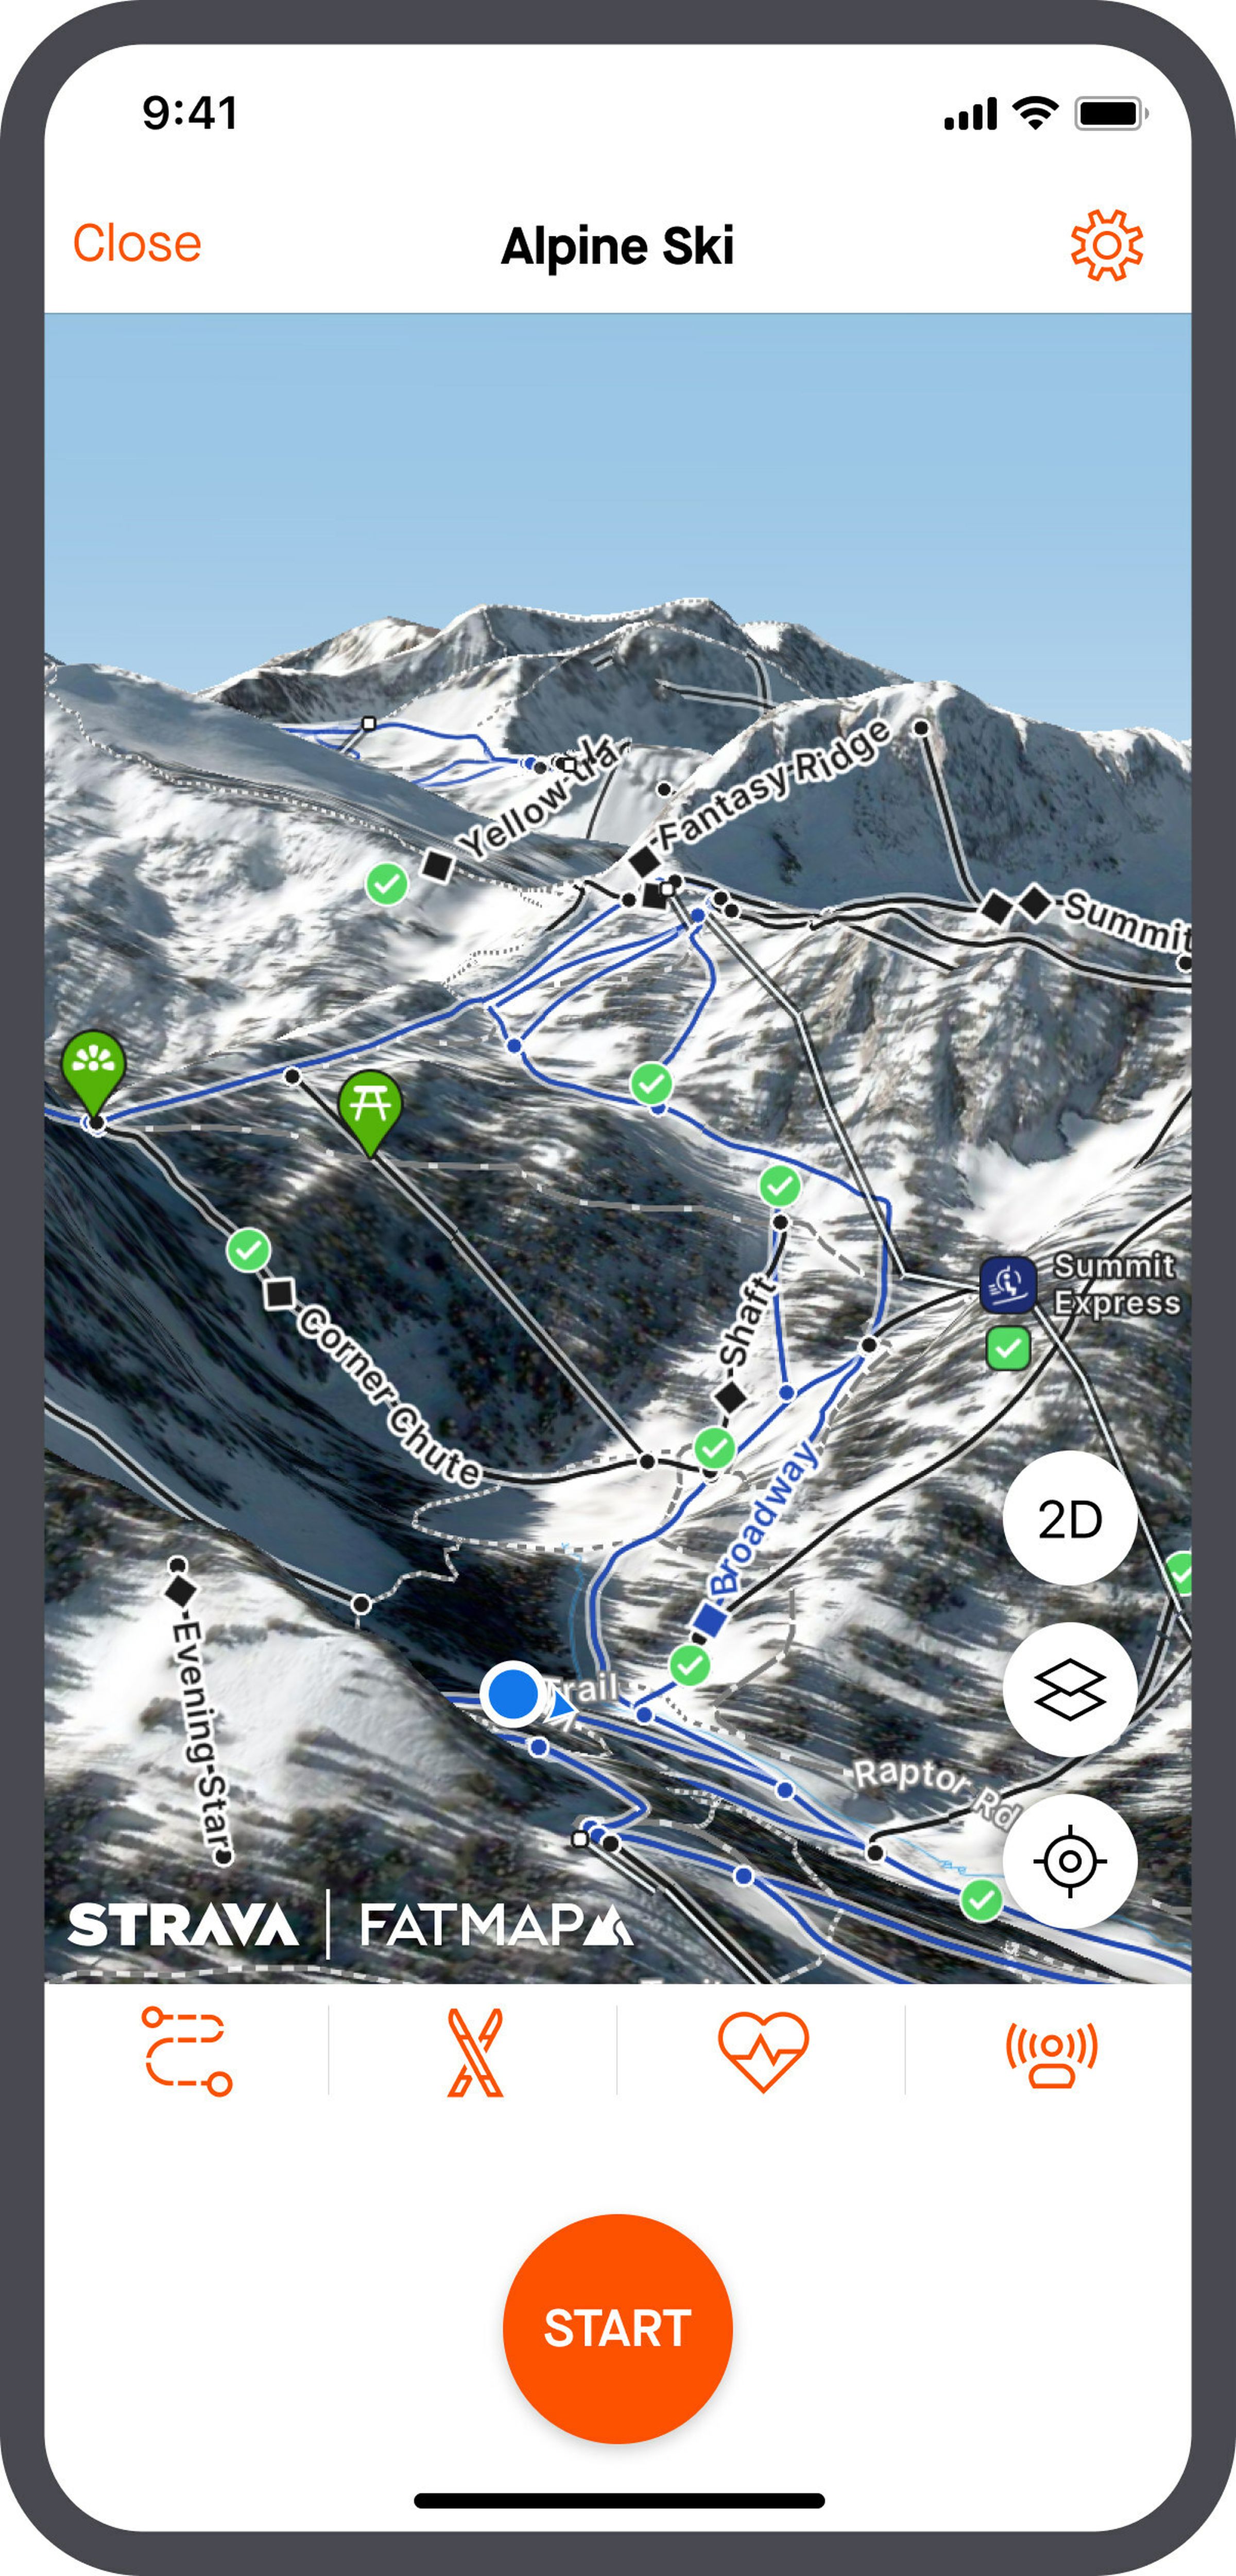 Renderização de um mapa de esqui alpino 3D mostrando vários pontos de interesse no aplicativo Strava.